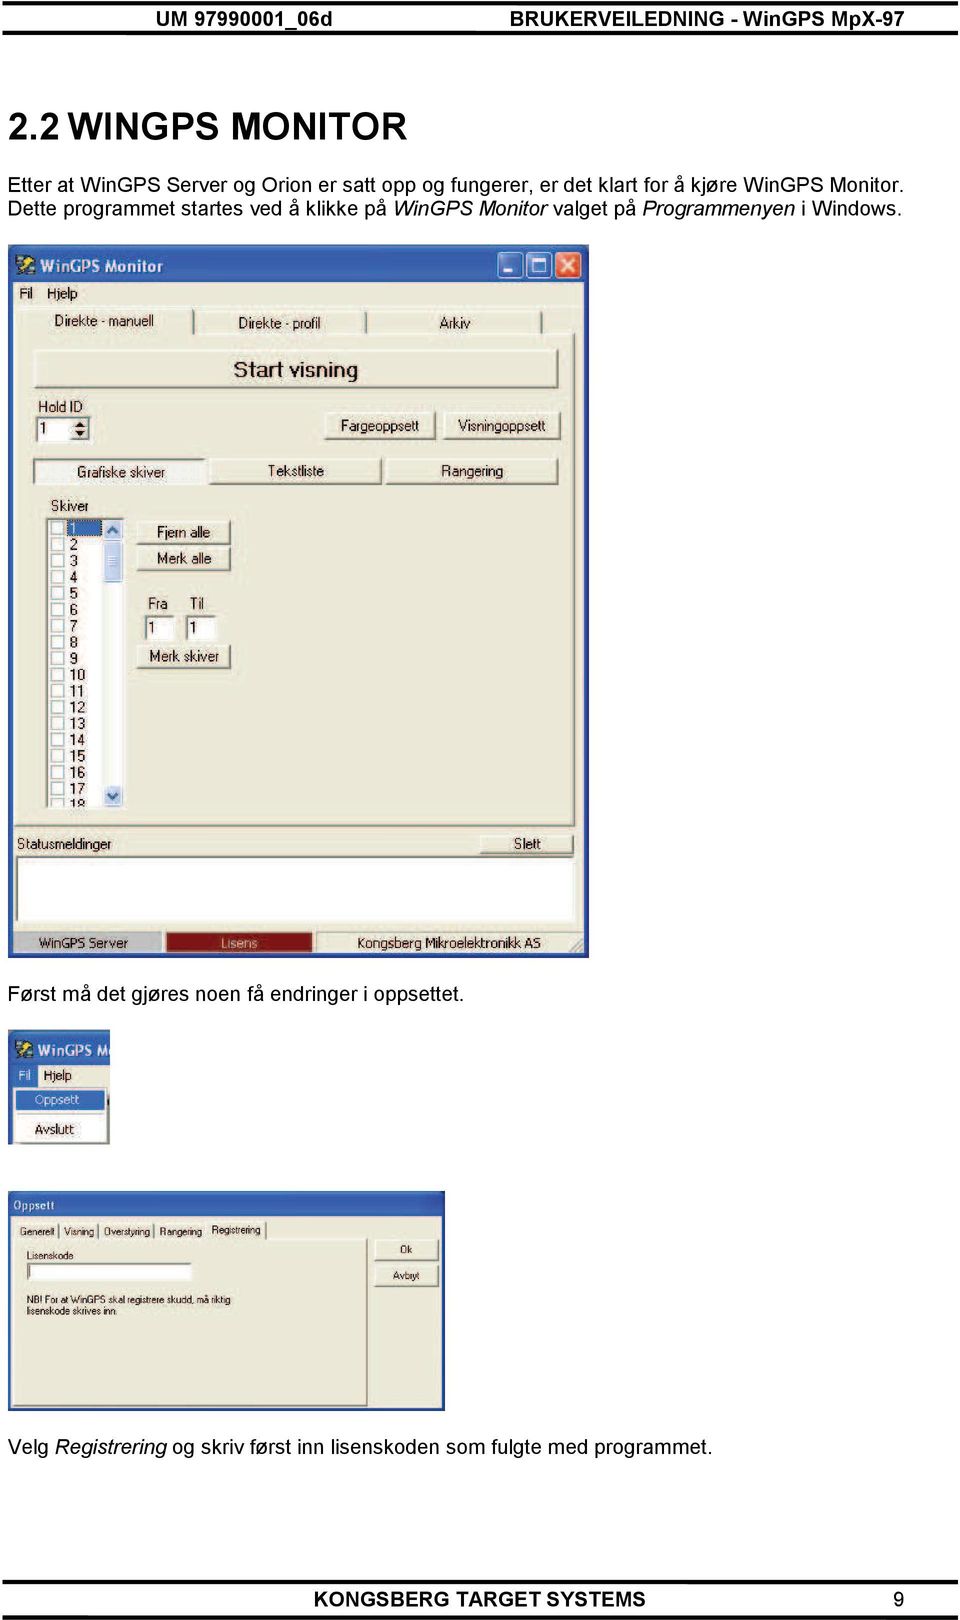 Dette programmet startes ved å klikke på WinGPS Monitor valget på Programmenyen i Windows.